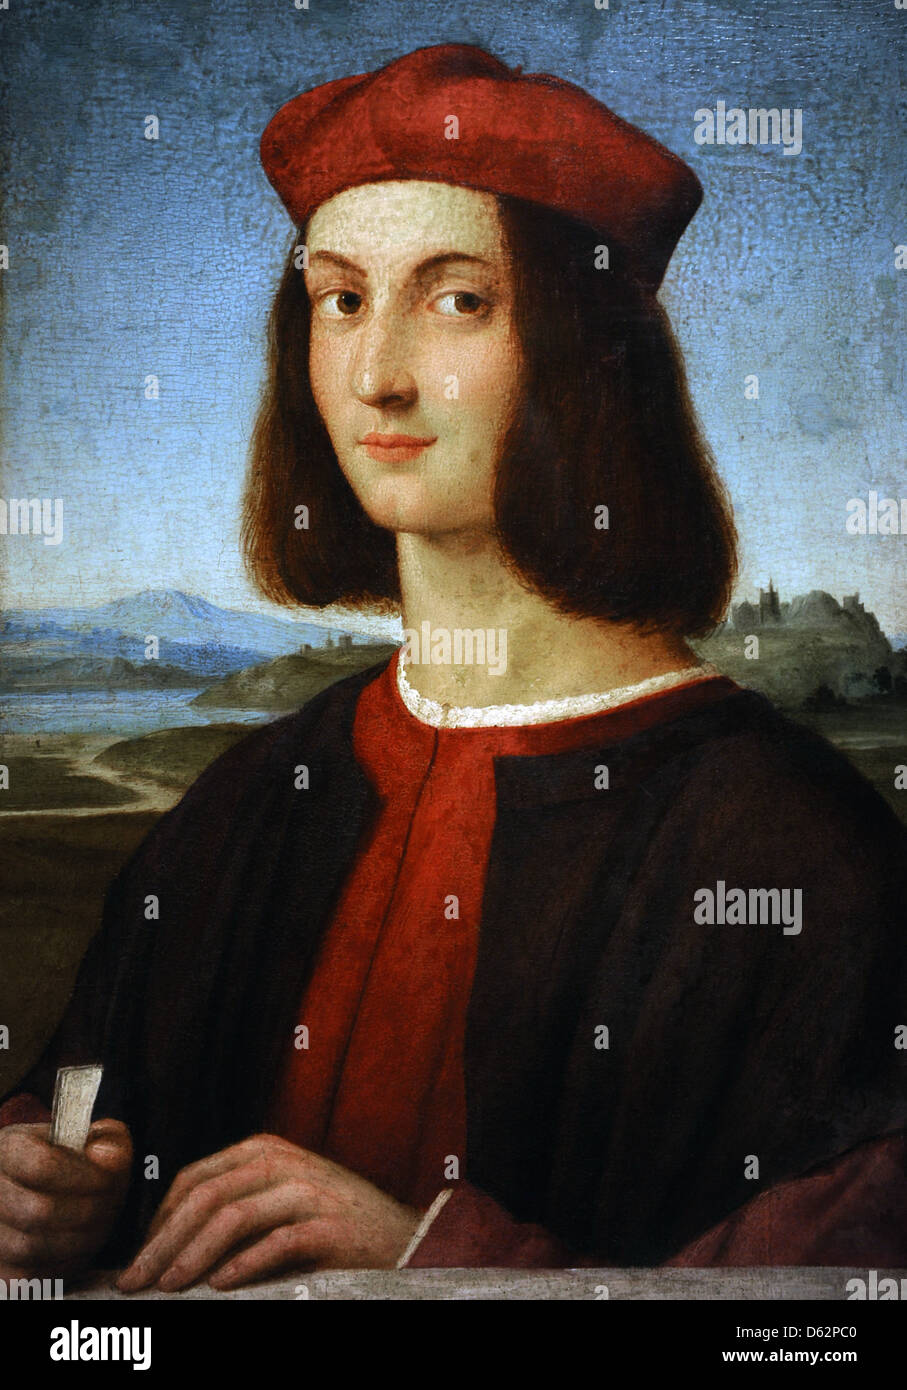 Raphael (1483-1520). Peintre italien. Portrait d'un jeune homme. Musée des beaux-arts de Budapest. La Hongrie. Banque D'Images